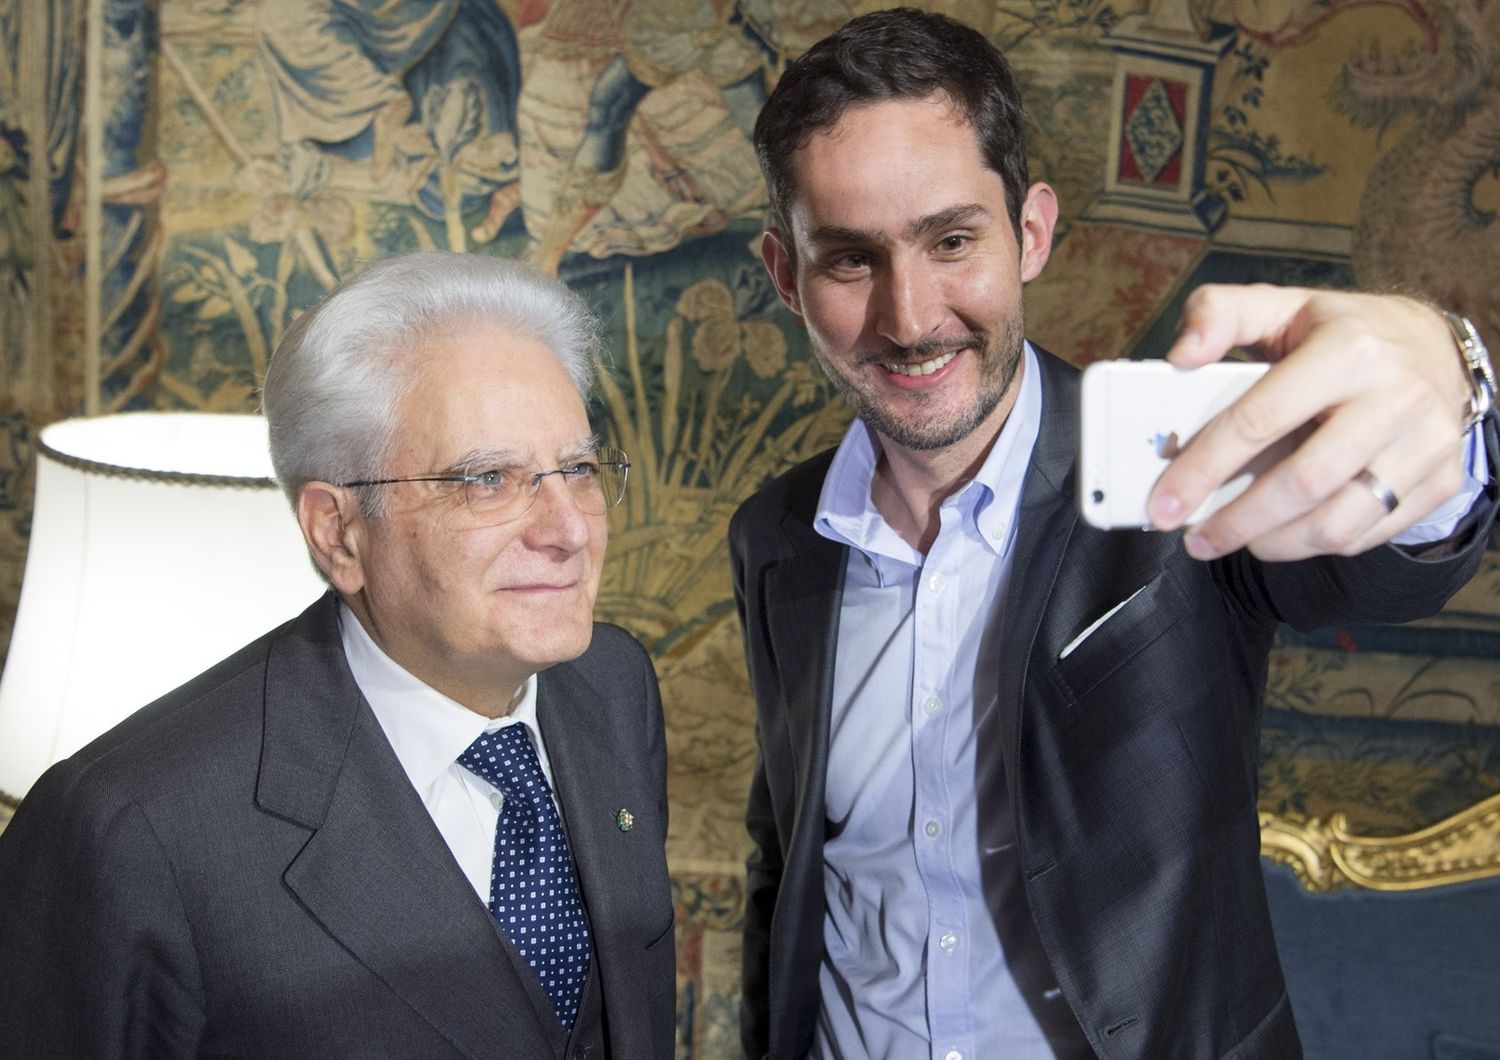 Mattarella con il fondatore di Instagram Kevin York Systrom (Twitter)&nbsp;